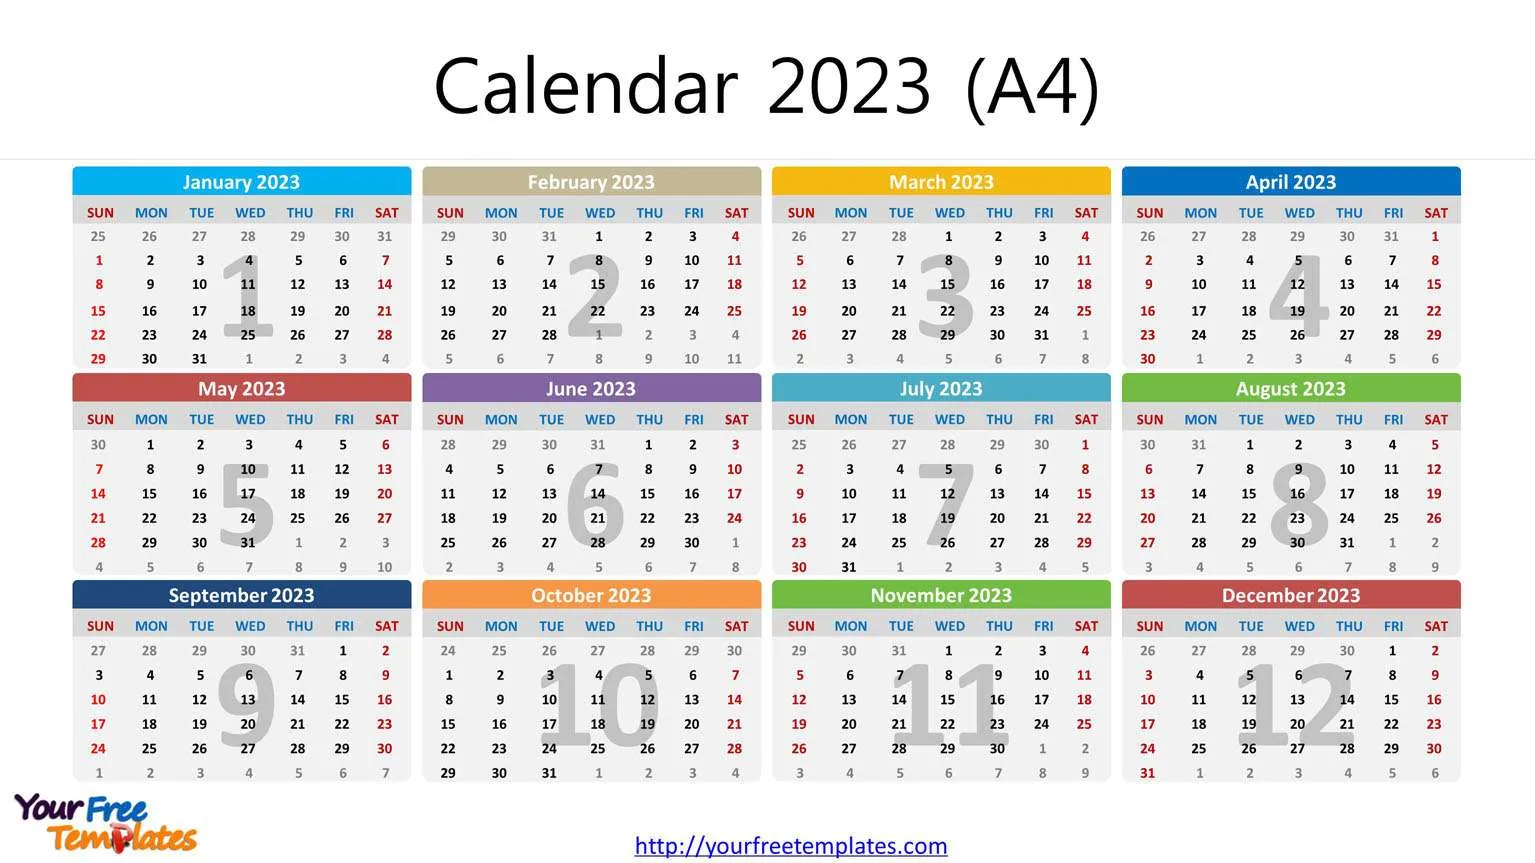  may 2023 calendar